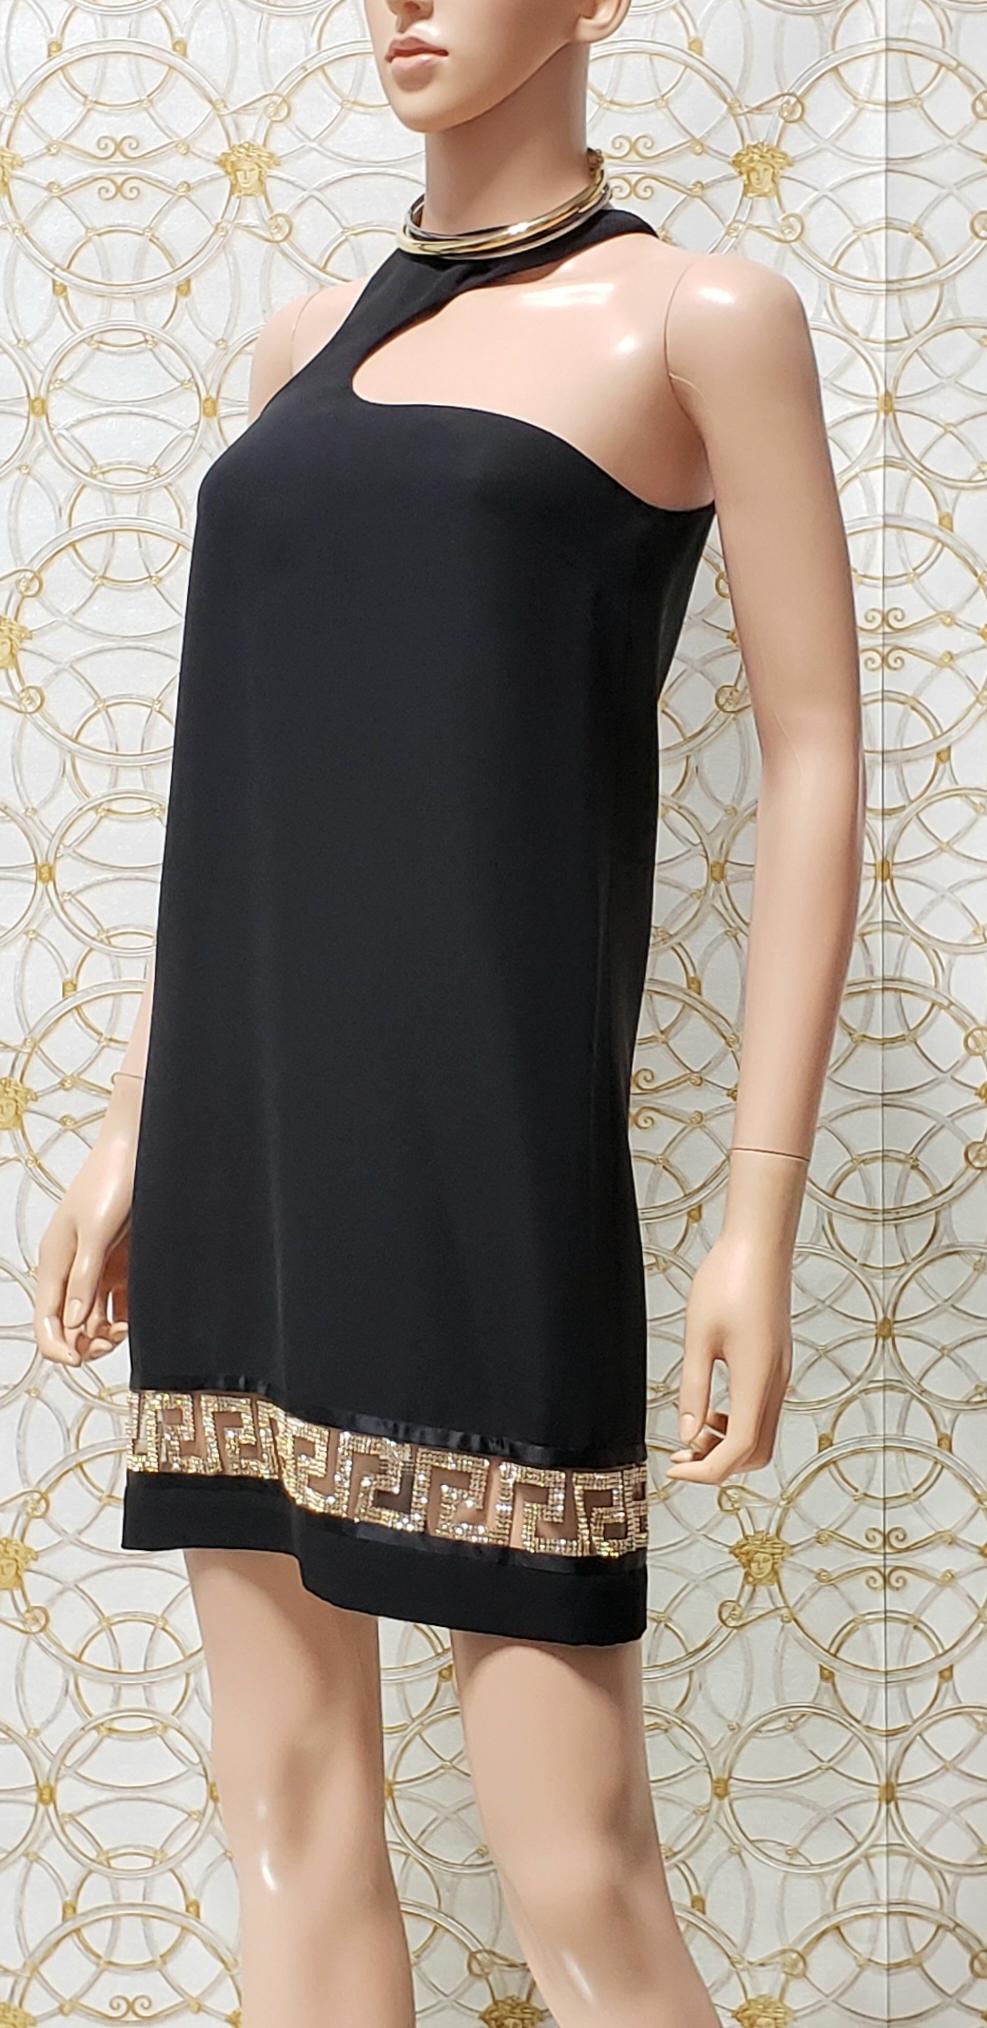 Resort 2015 look # 25 VERSACE BLACK CRYSTAL-EMBELLISHED SILK-CADY DRESS 38 - 2 For Sale 5